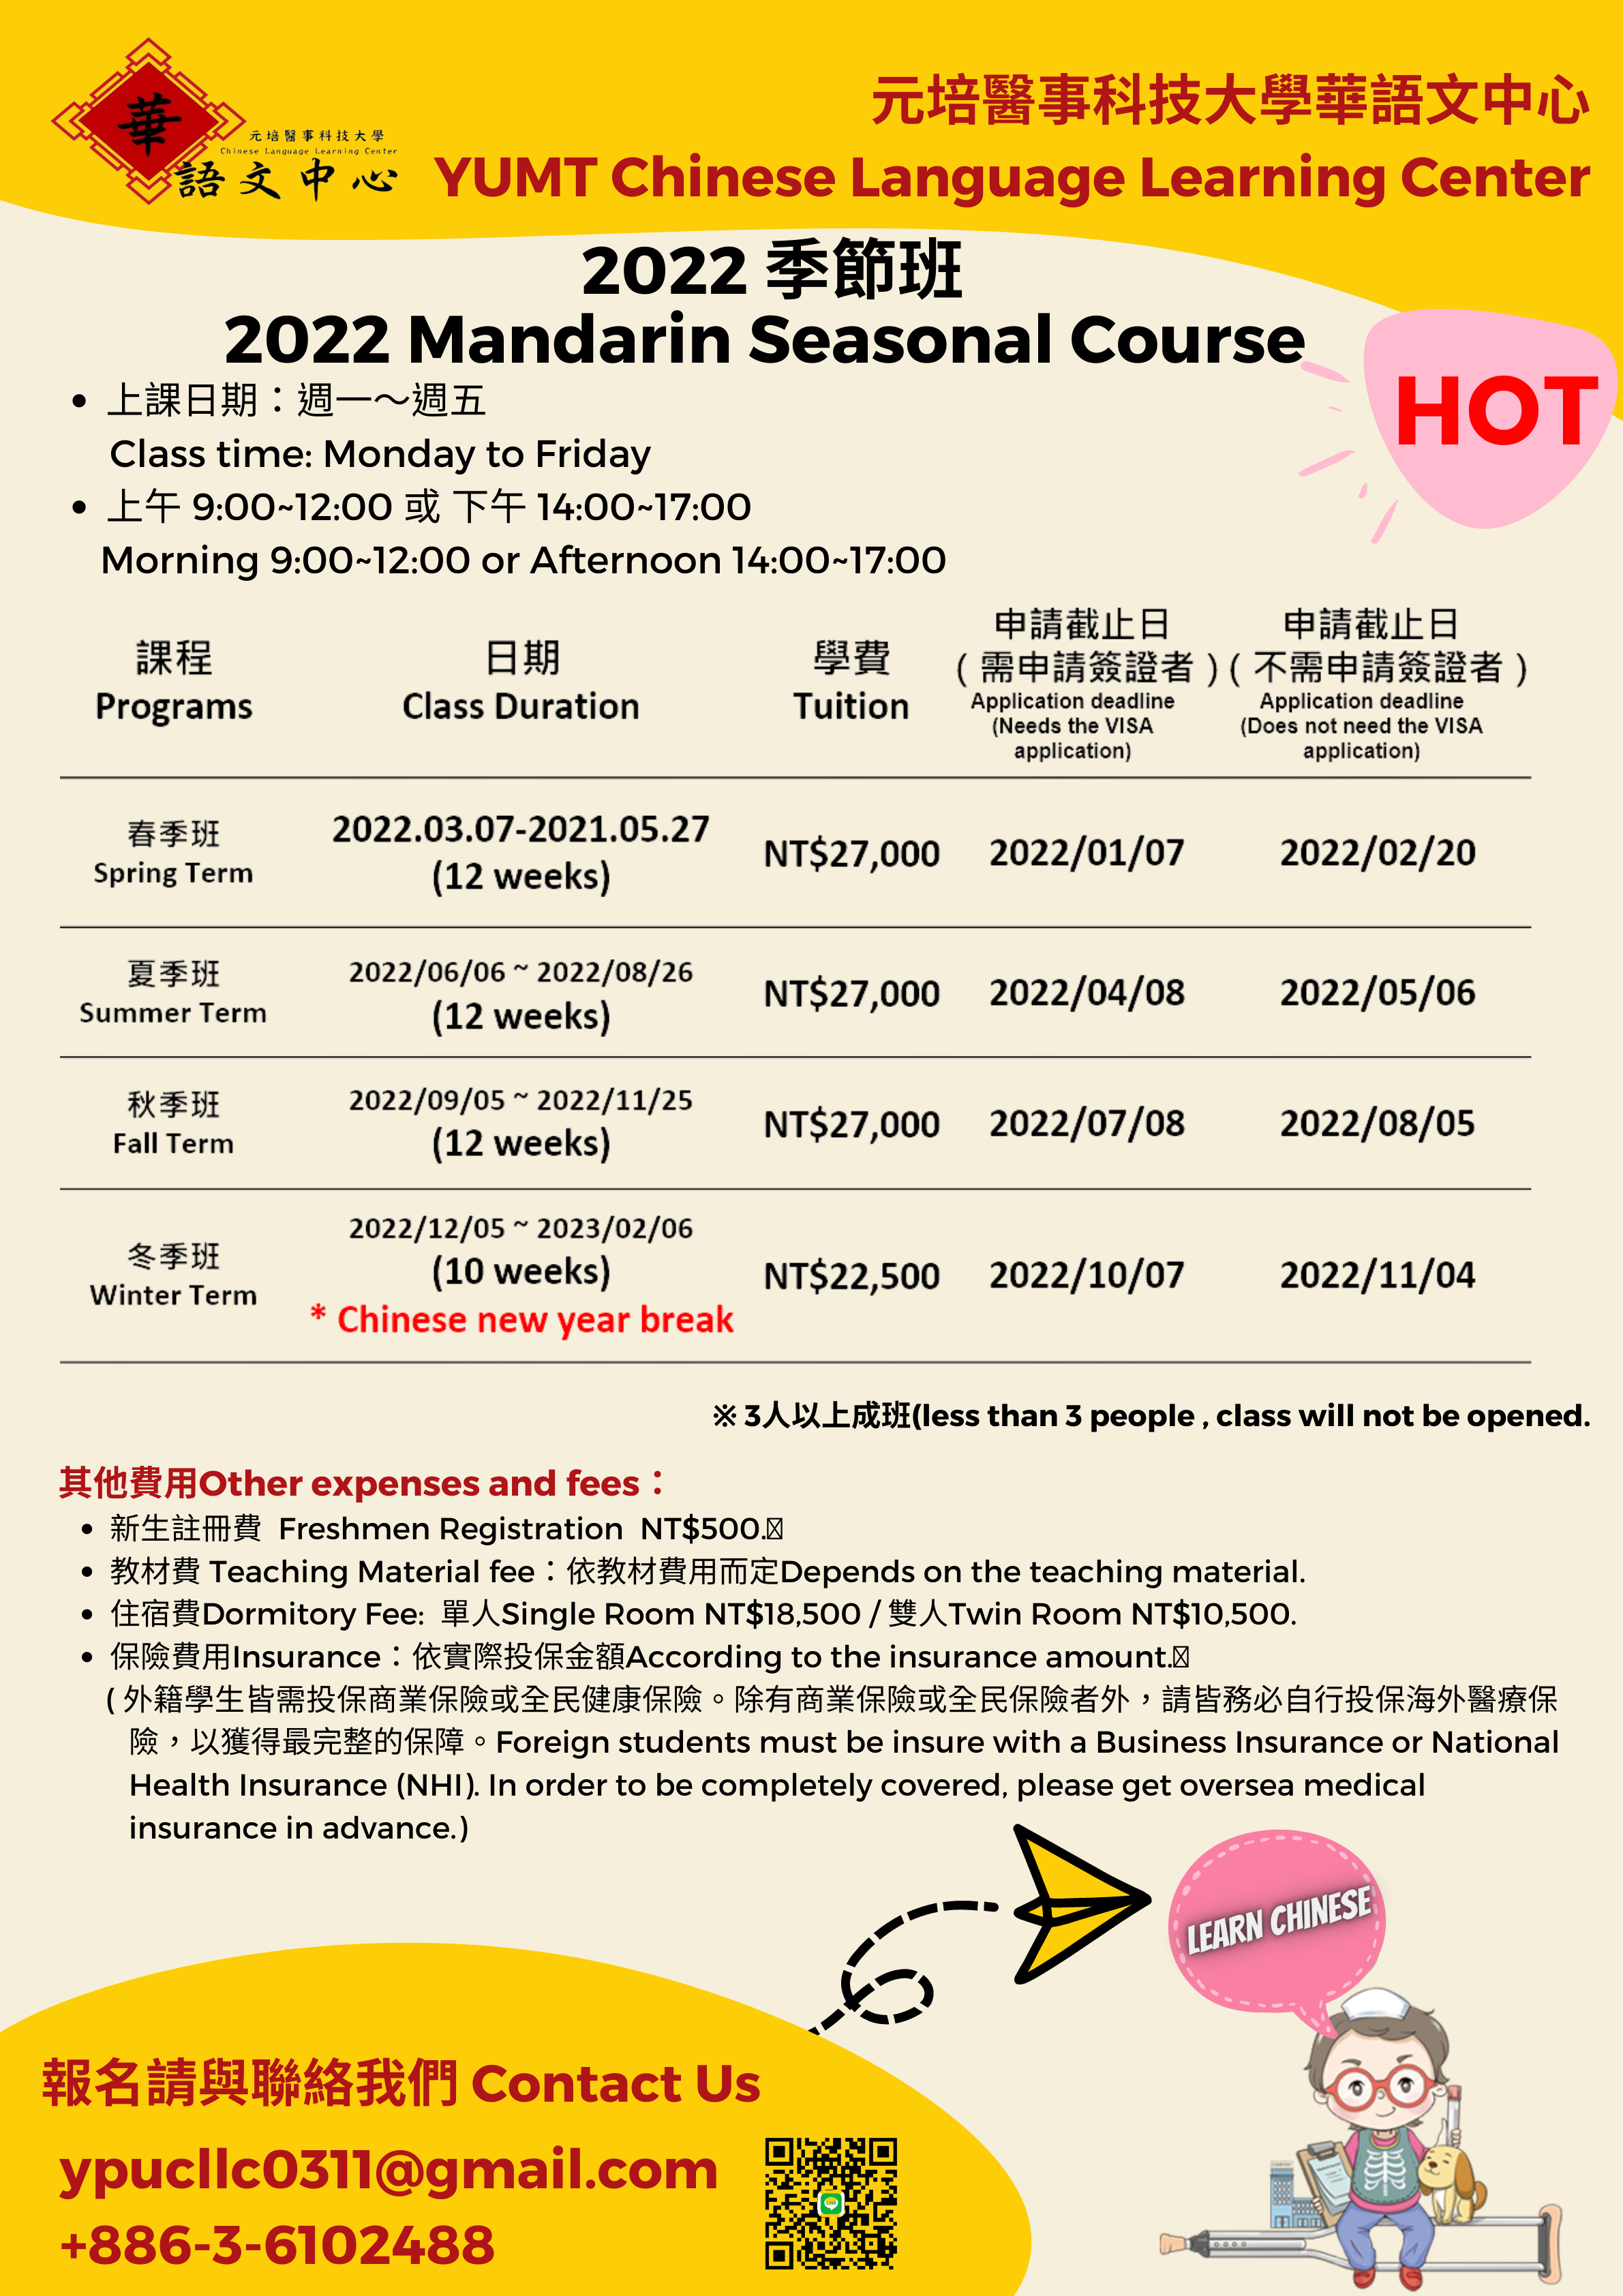 2022 Mandarin Seasonal Course